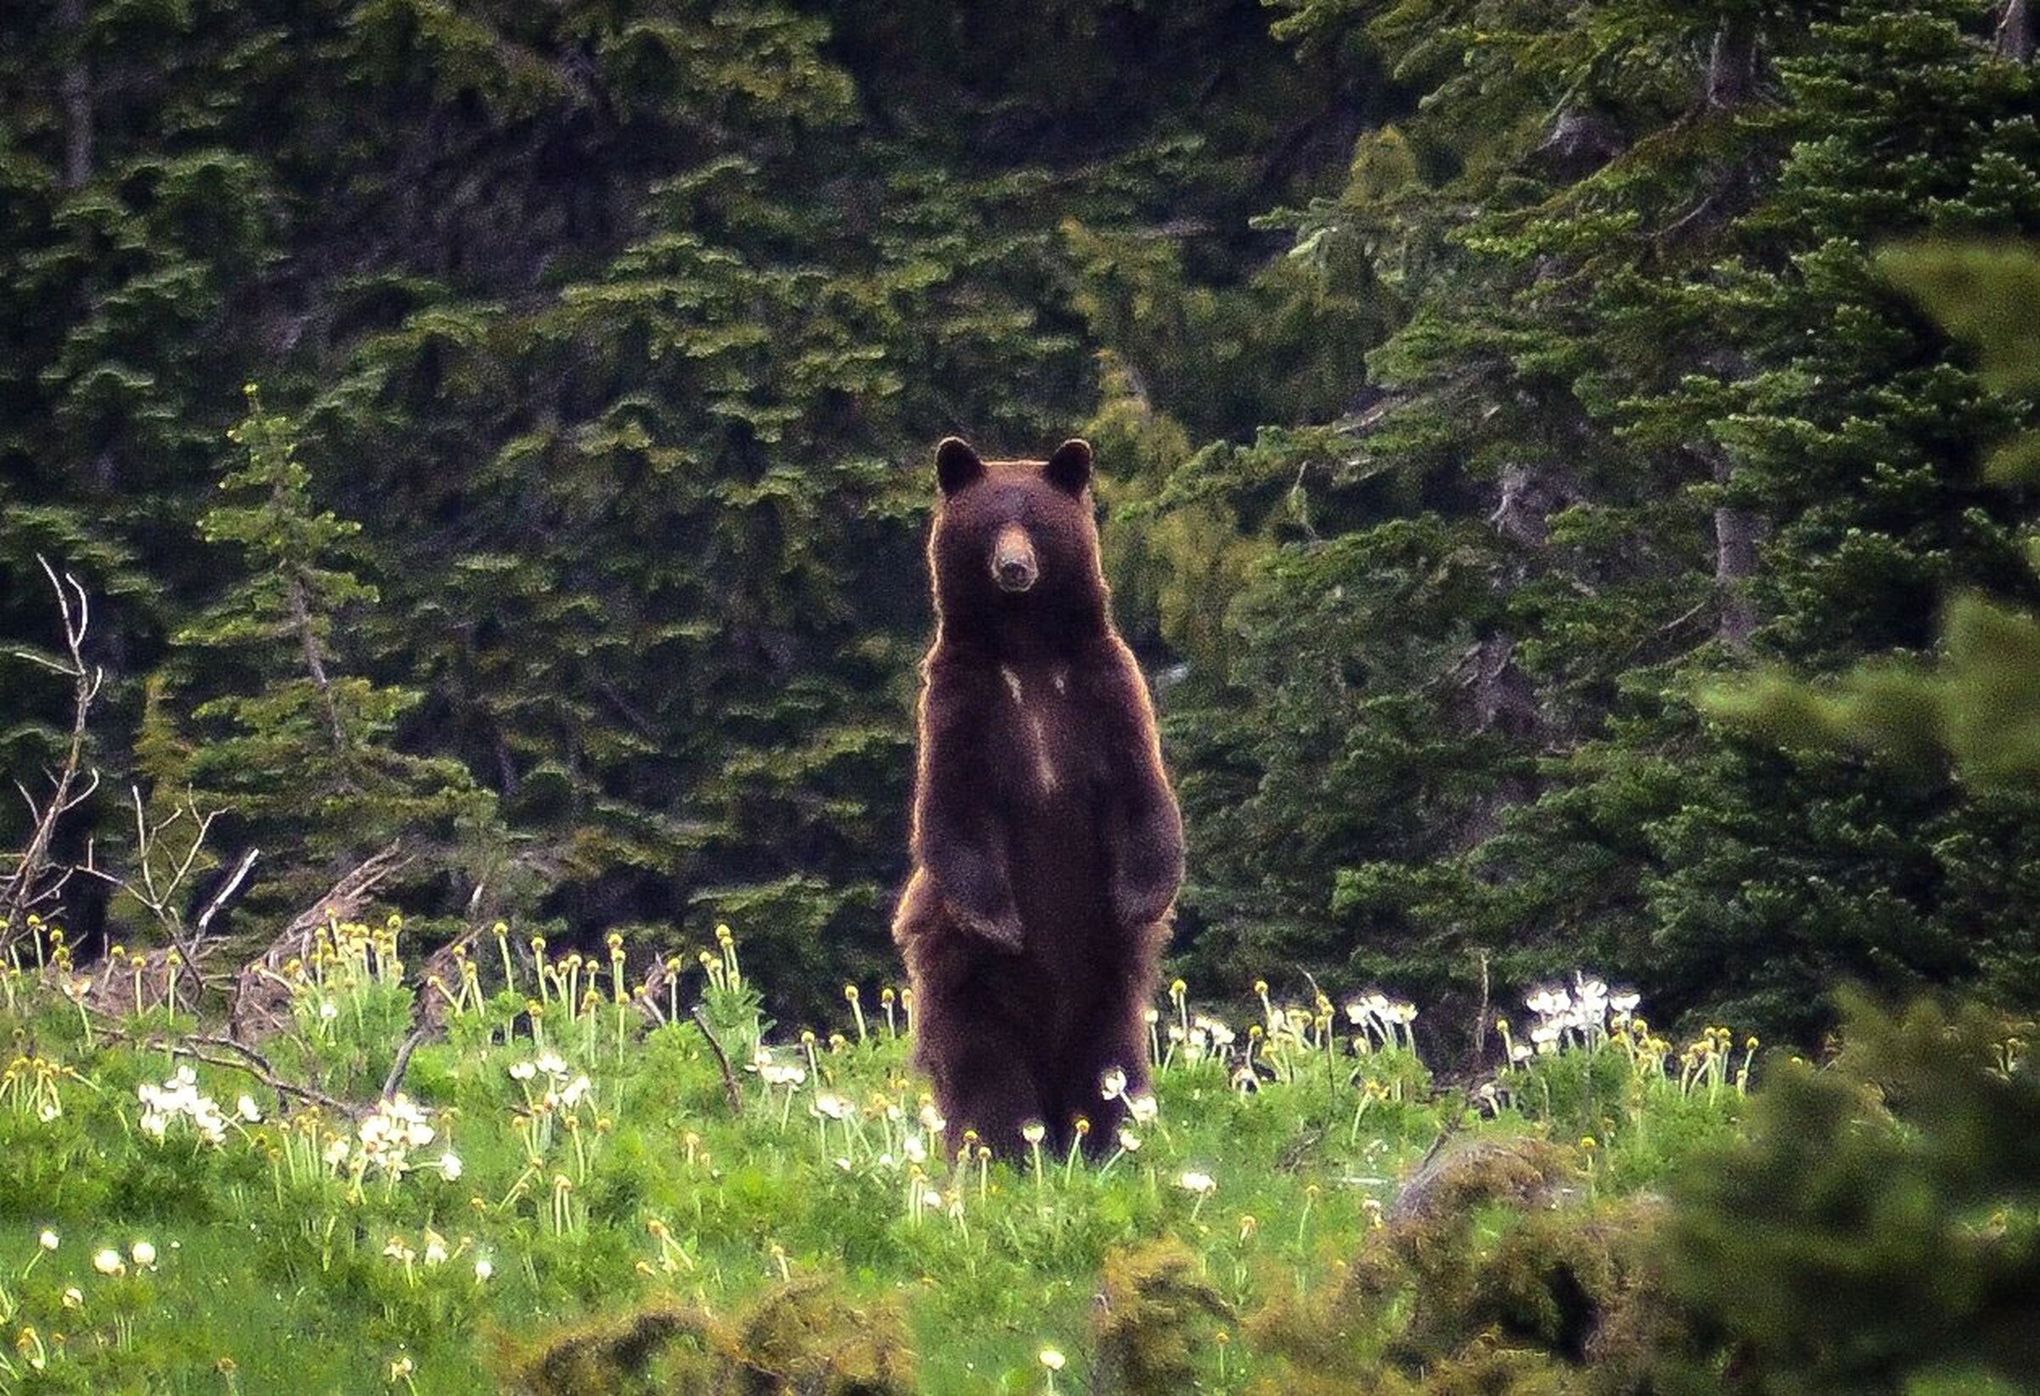 WA bans spring black bear hunting